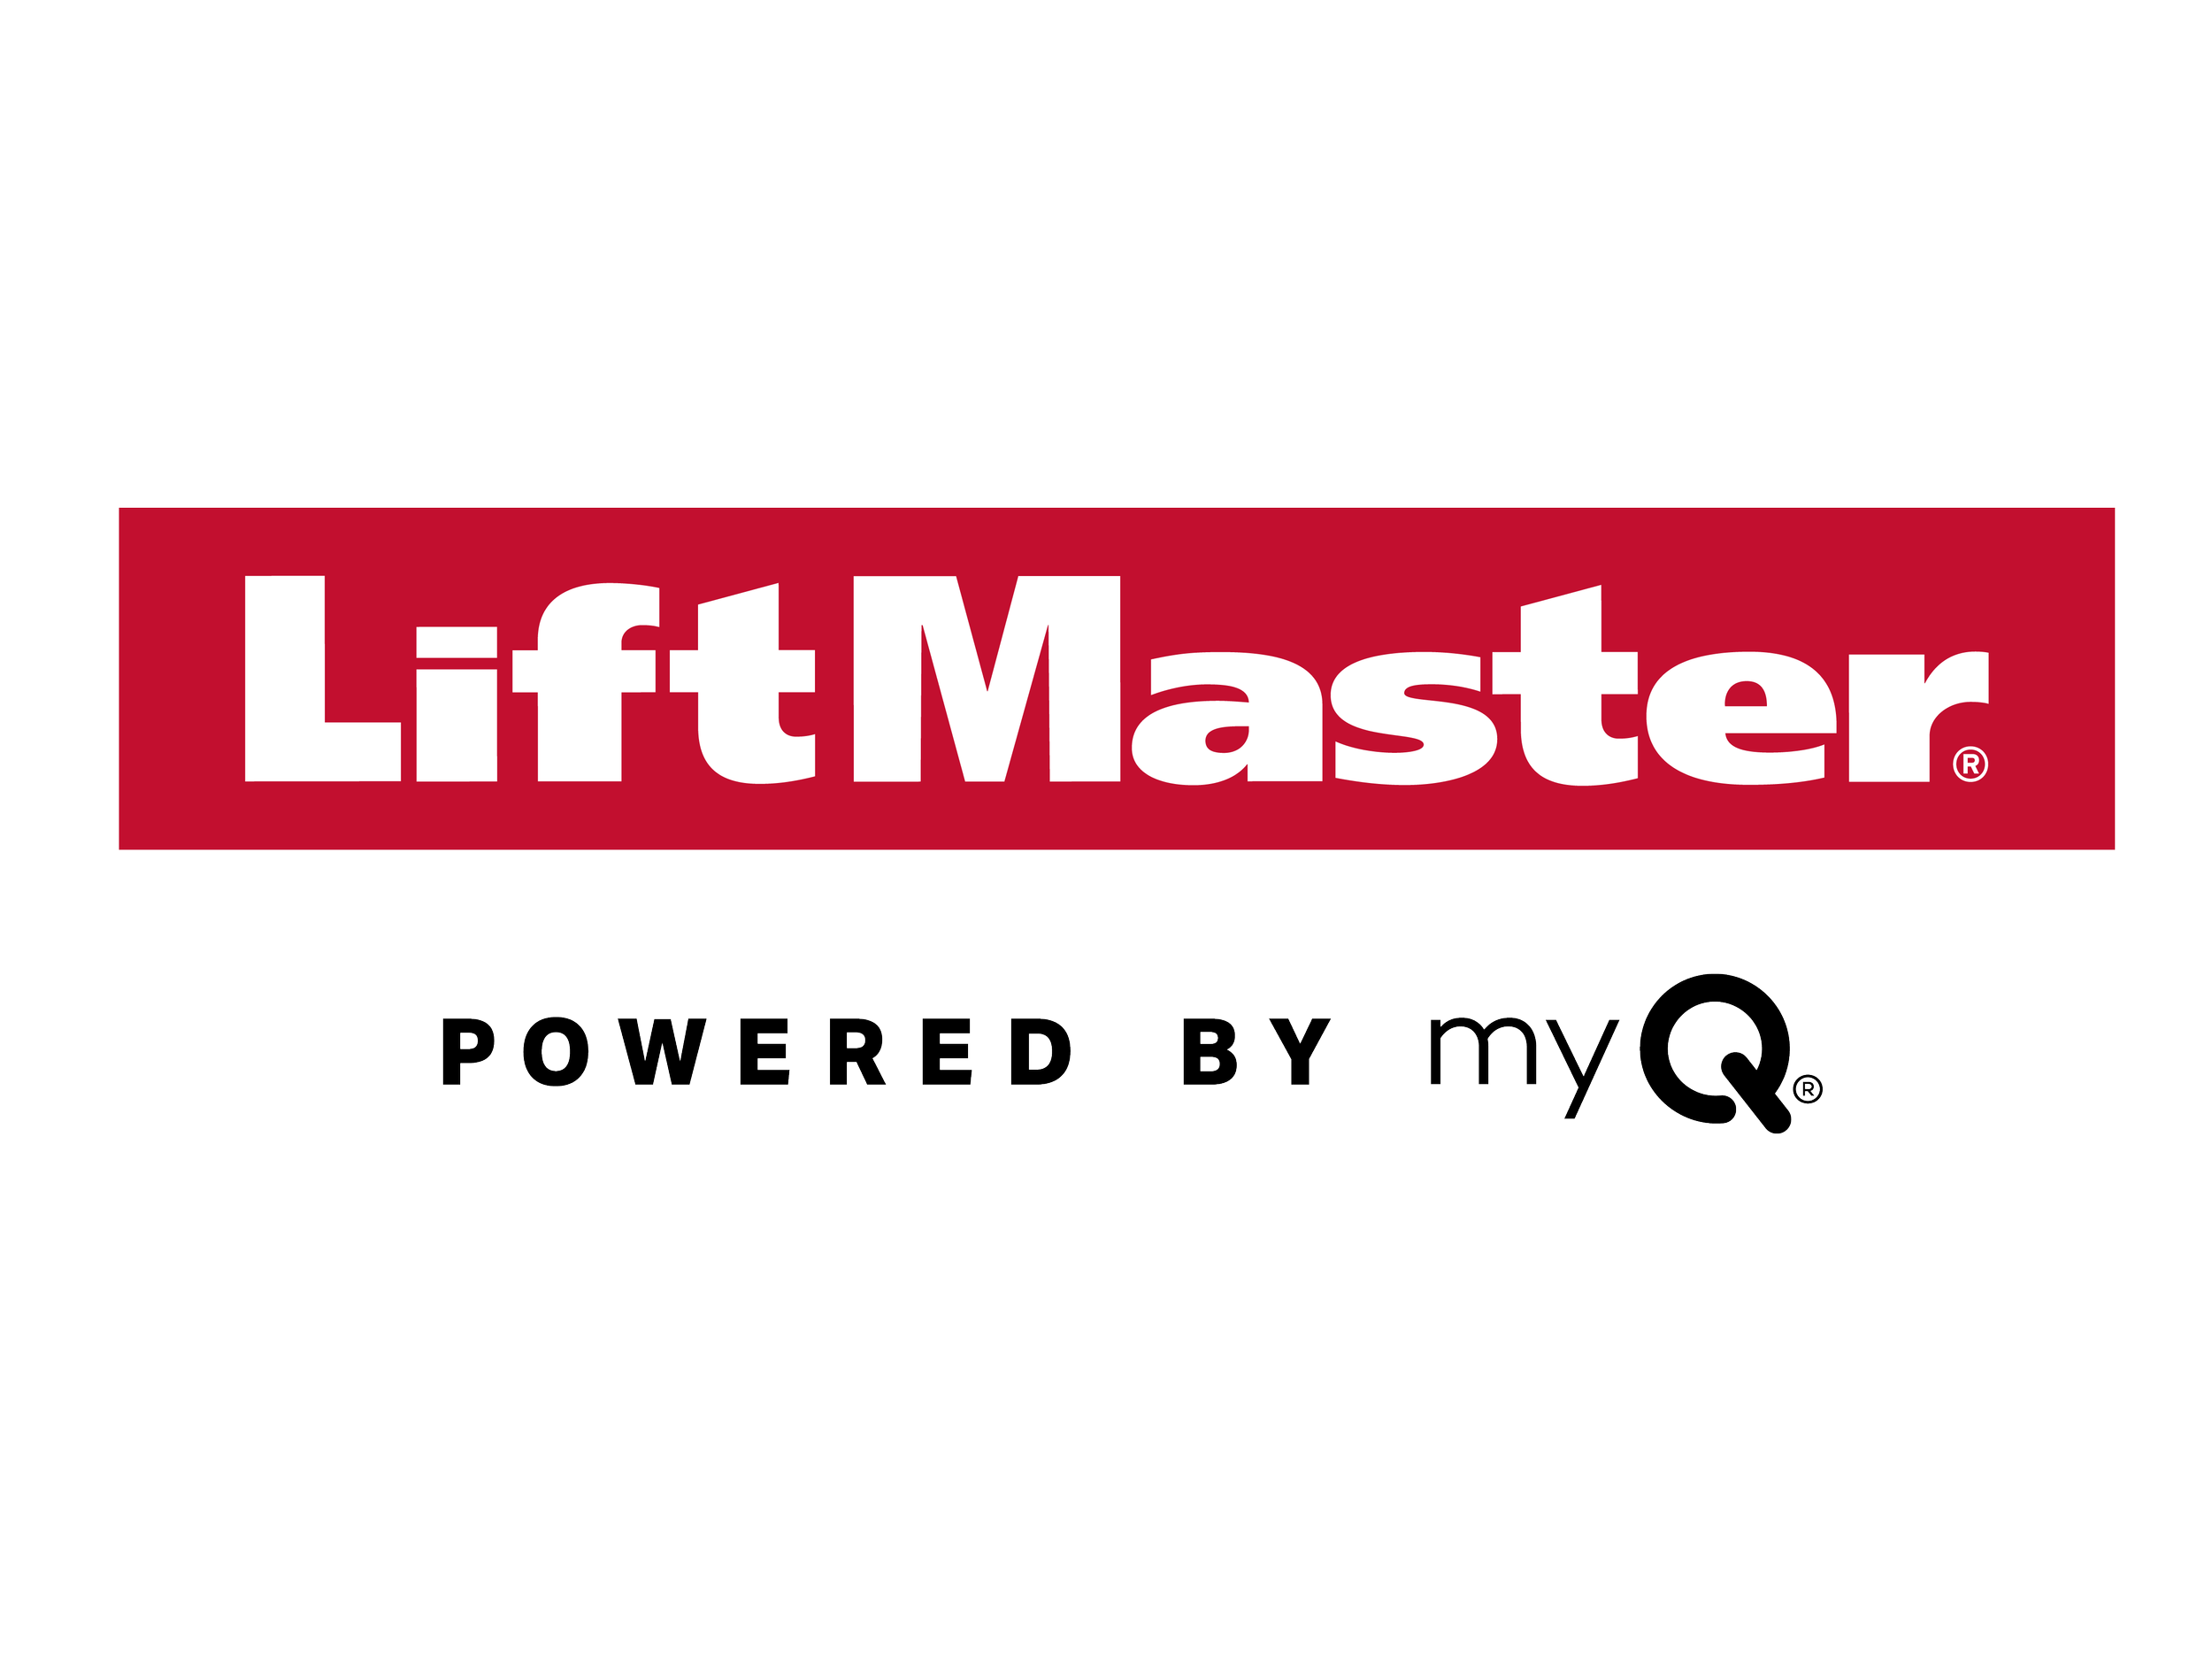 LiftMaster 2022.png